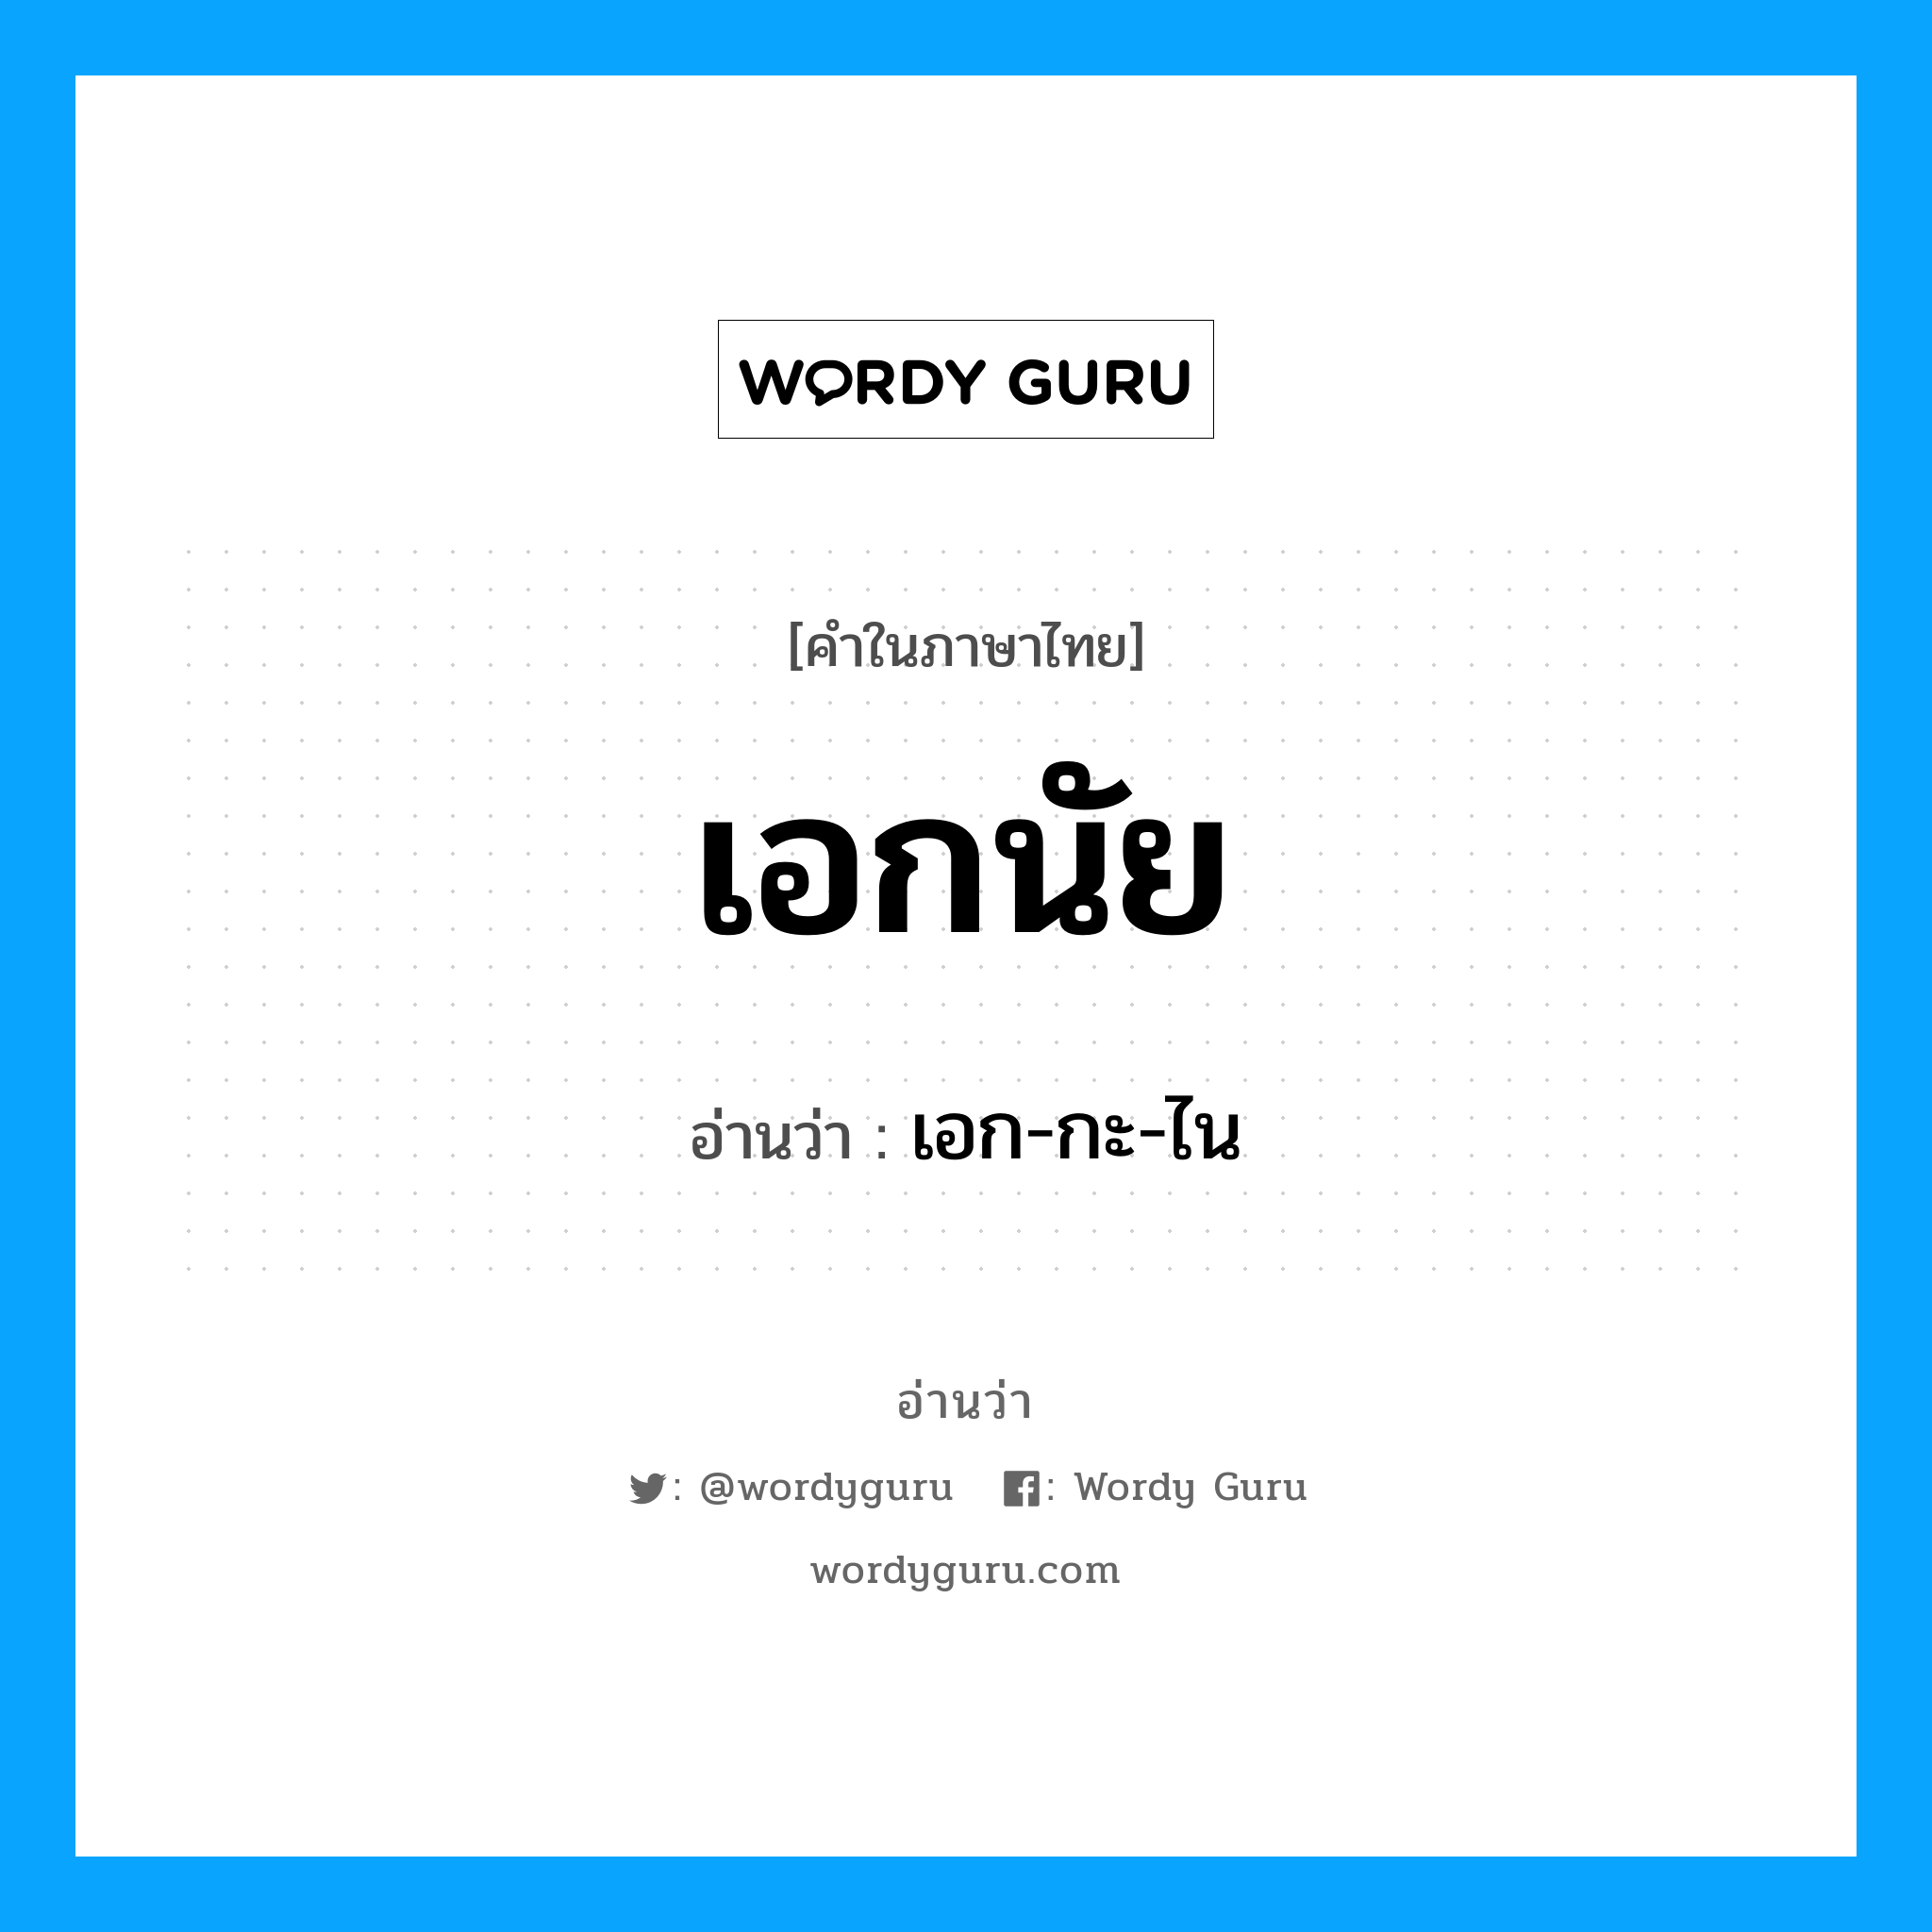 เอก-กะ-ไน เป็นคำอ่านของคำไหน?, คำในภาษาไทย เอก-กะ-ไน อ่านว่า เอกนัย